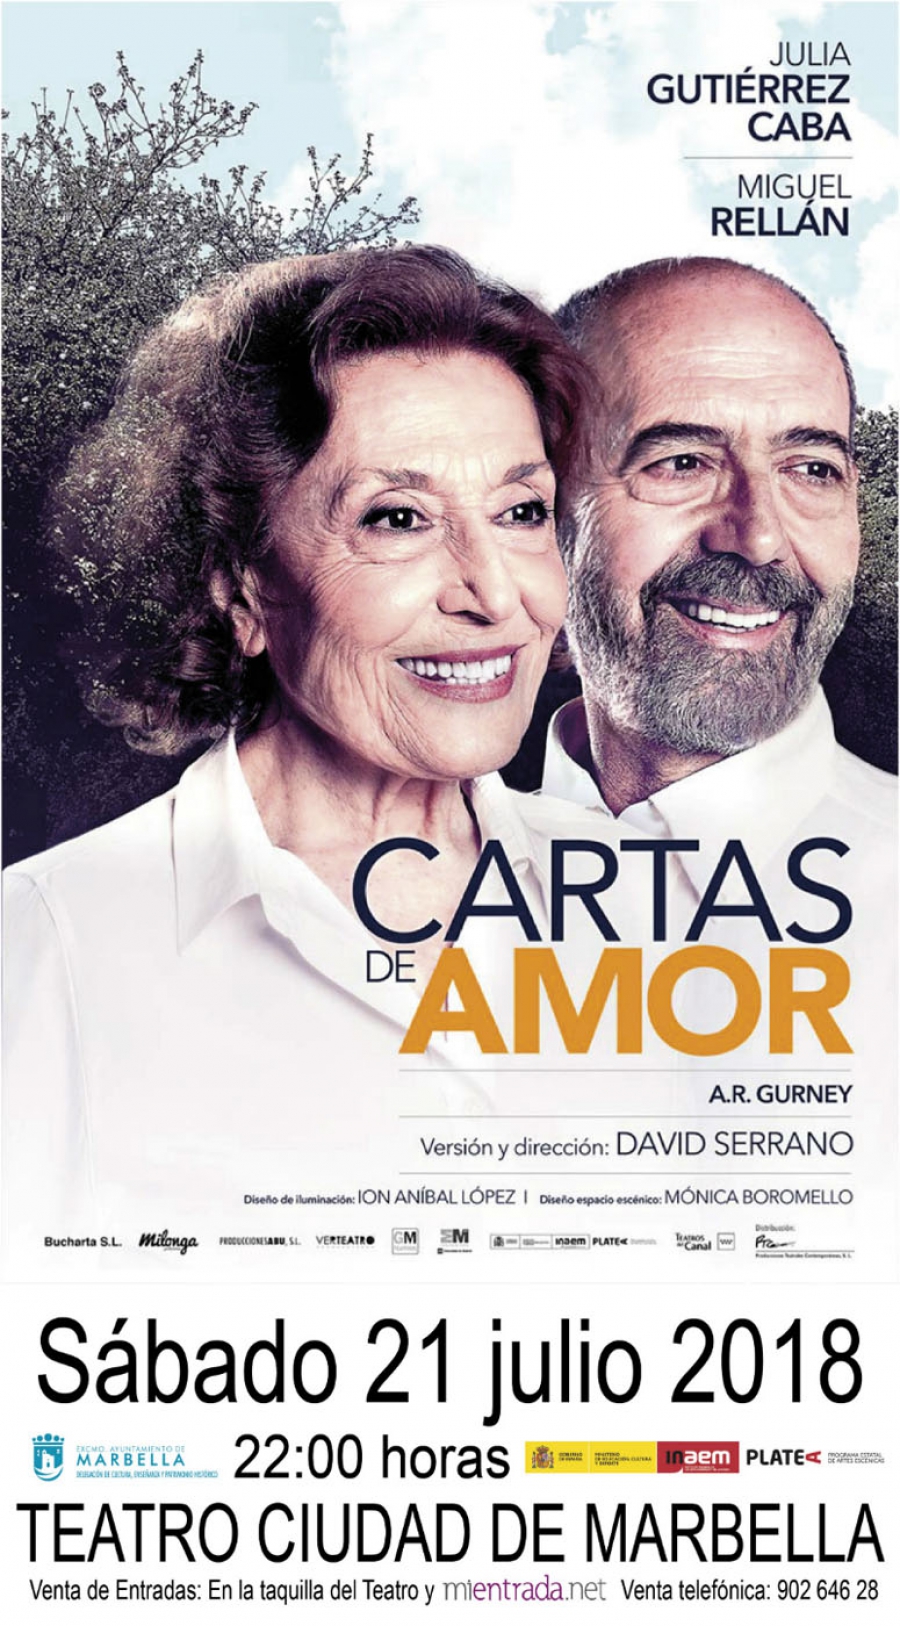 Julia Gutiérrez Caba y Miguel Rellán llevarán sus ‘Cartas de amor’ el 21 de julio al Teatro Ciudad de Marbella